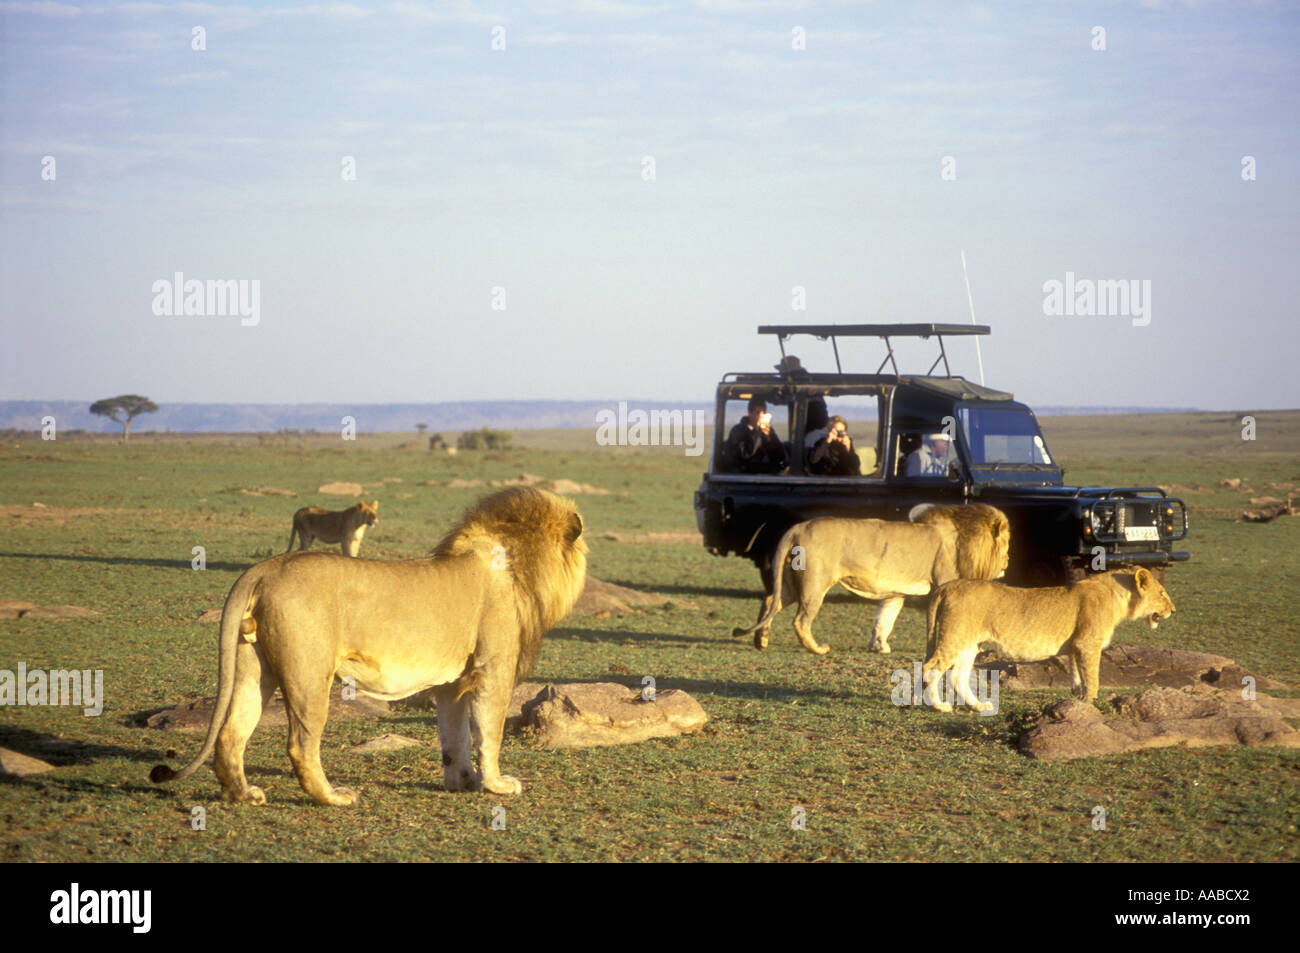 Ouvrez surmontée LandRover à proximité de lions de la réserve nationale de Masai Mara au Kenya Afrique de l'Est Banque D'Images